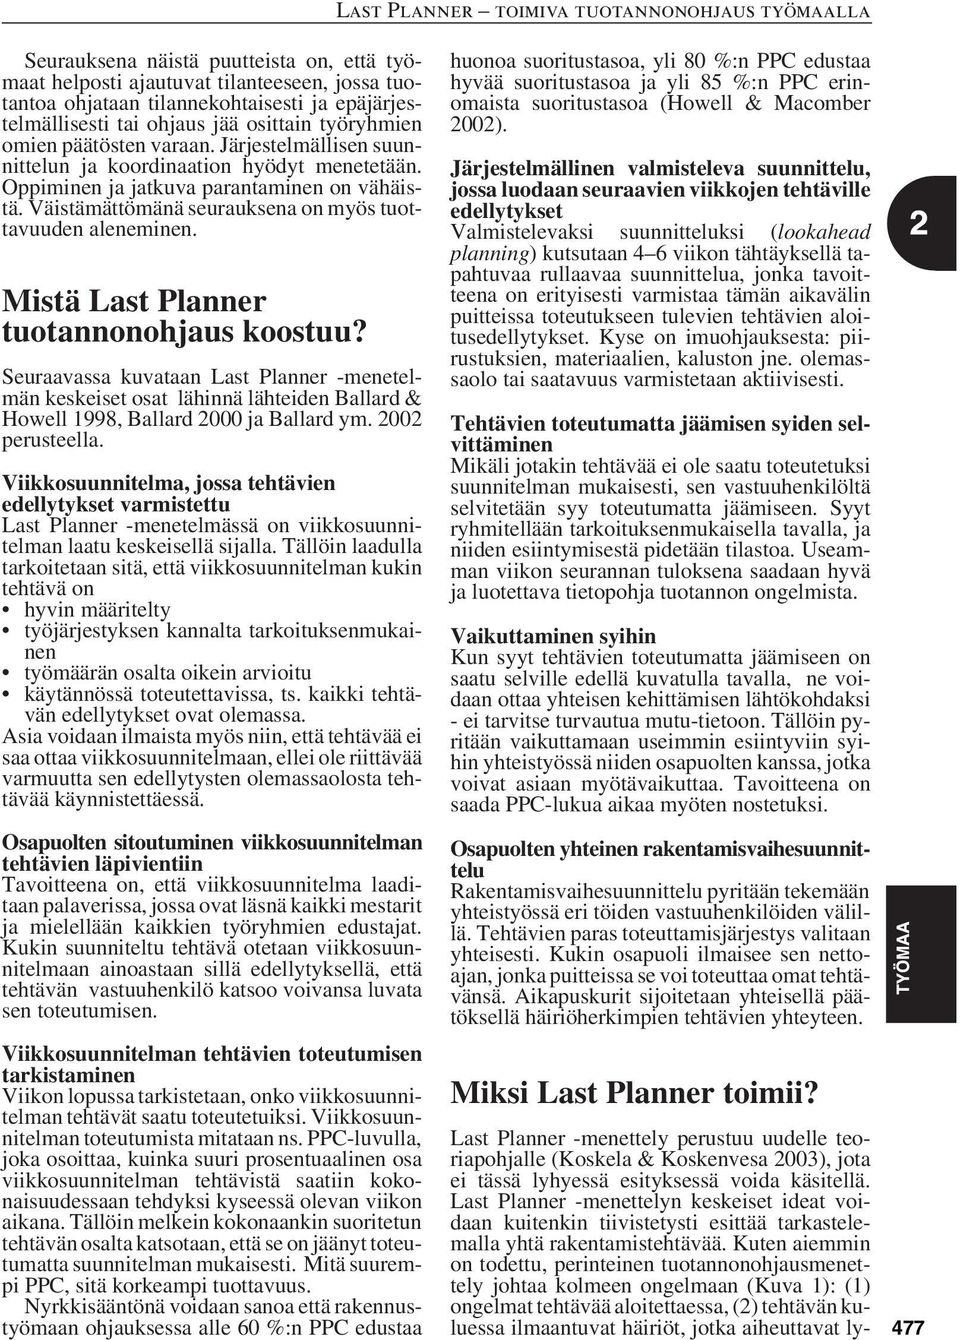 Mistä Last Planner tuotannonohjaus koostuu? Seuraavassa kuvataan Last Planner -menetelmän keskeiset osat lähinnä lähteiden Ballard & Howell 1998, Ballard 2000 ja Ballard ym. 2002 perusteella.